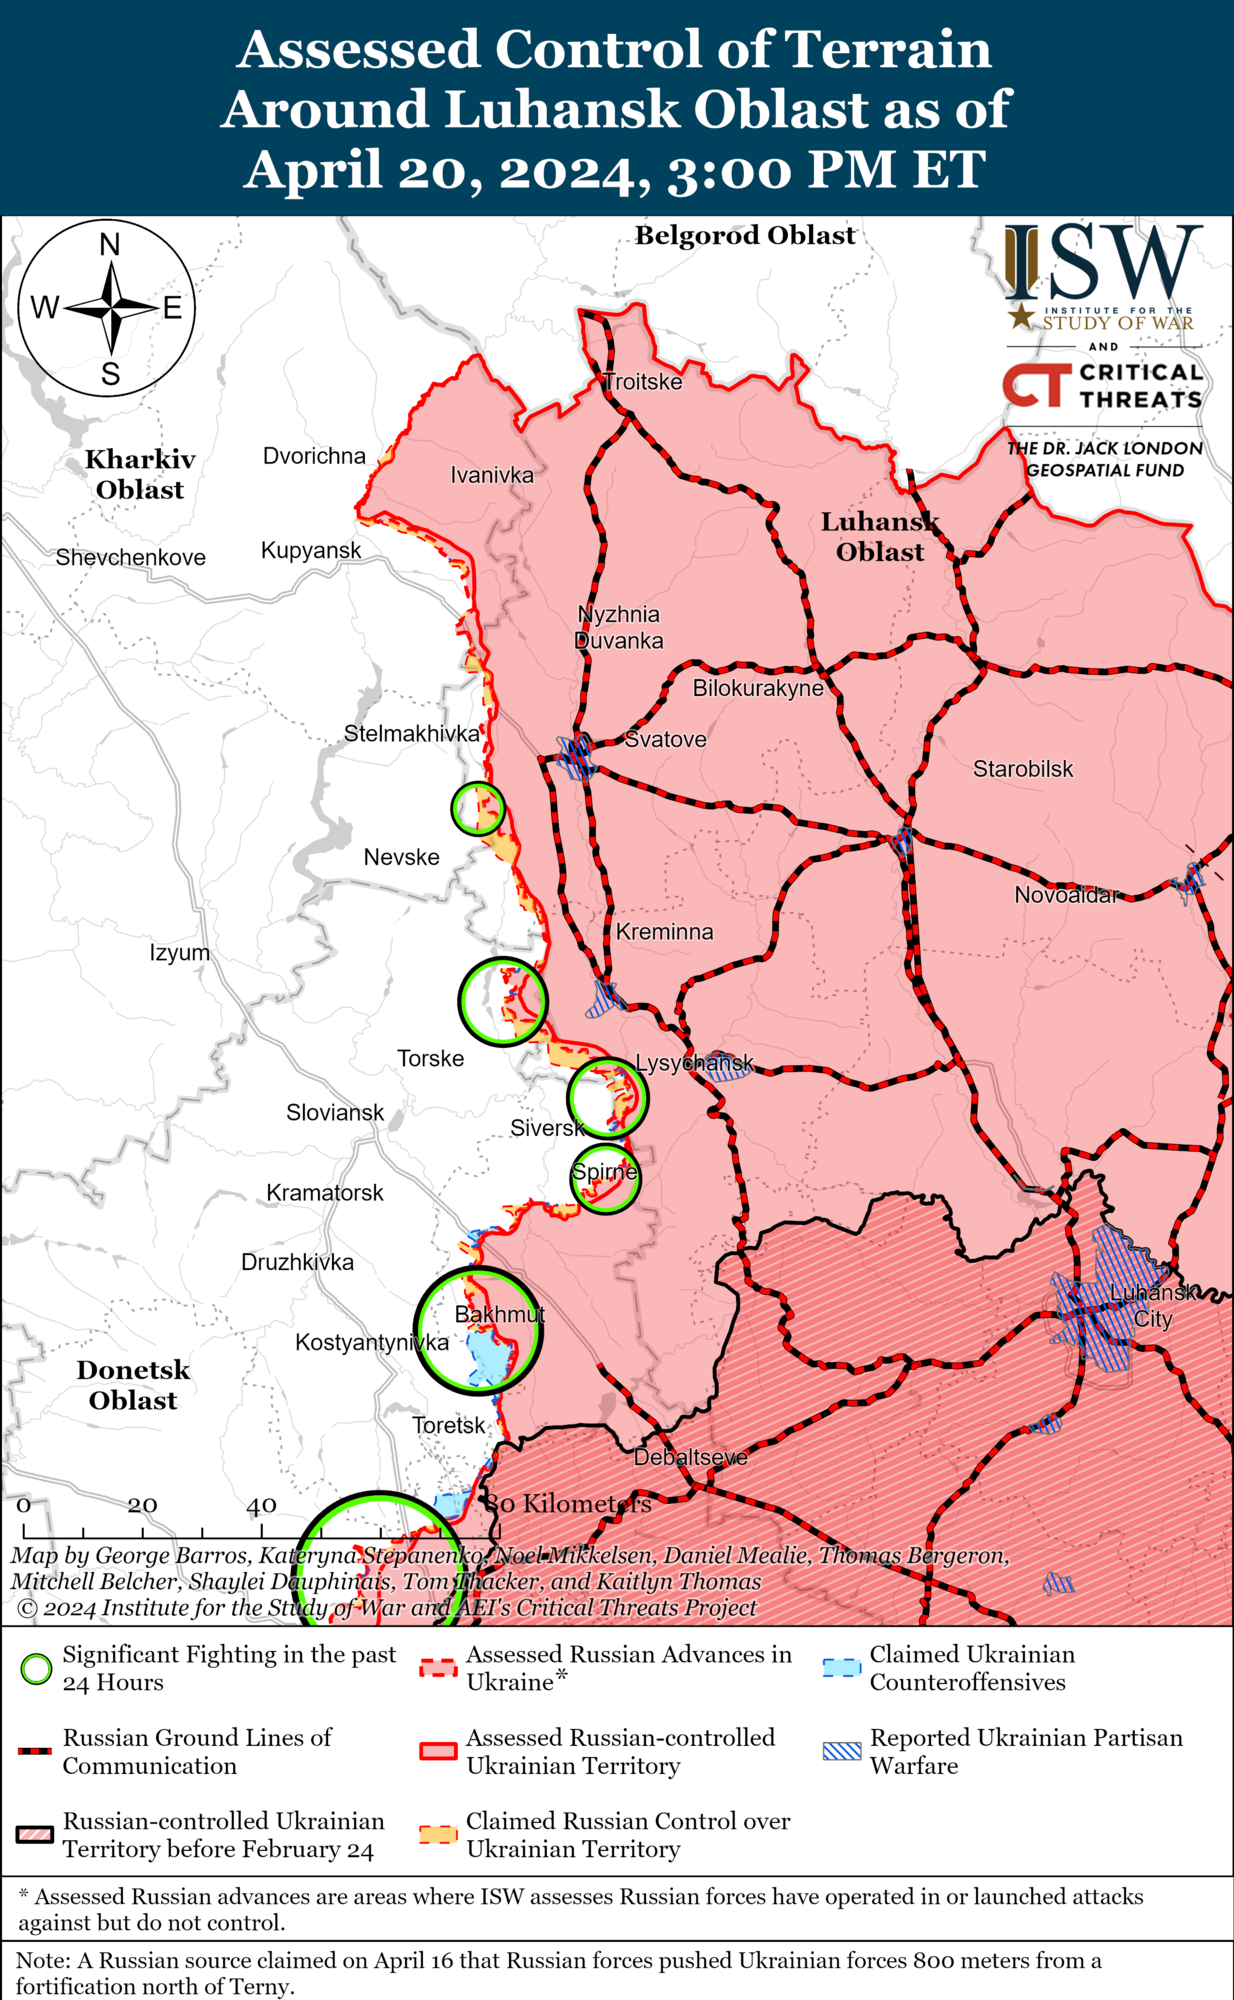 Siły Zbrojne Ukrainy będą w znacznie lepszej sytuacji: ISW przewiduje działania Rosji do czasu otrzymania przez Ukrainę pomocy wojskowej USA